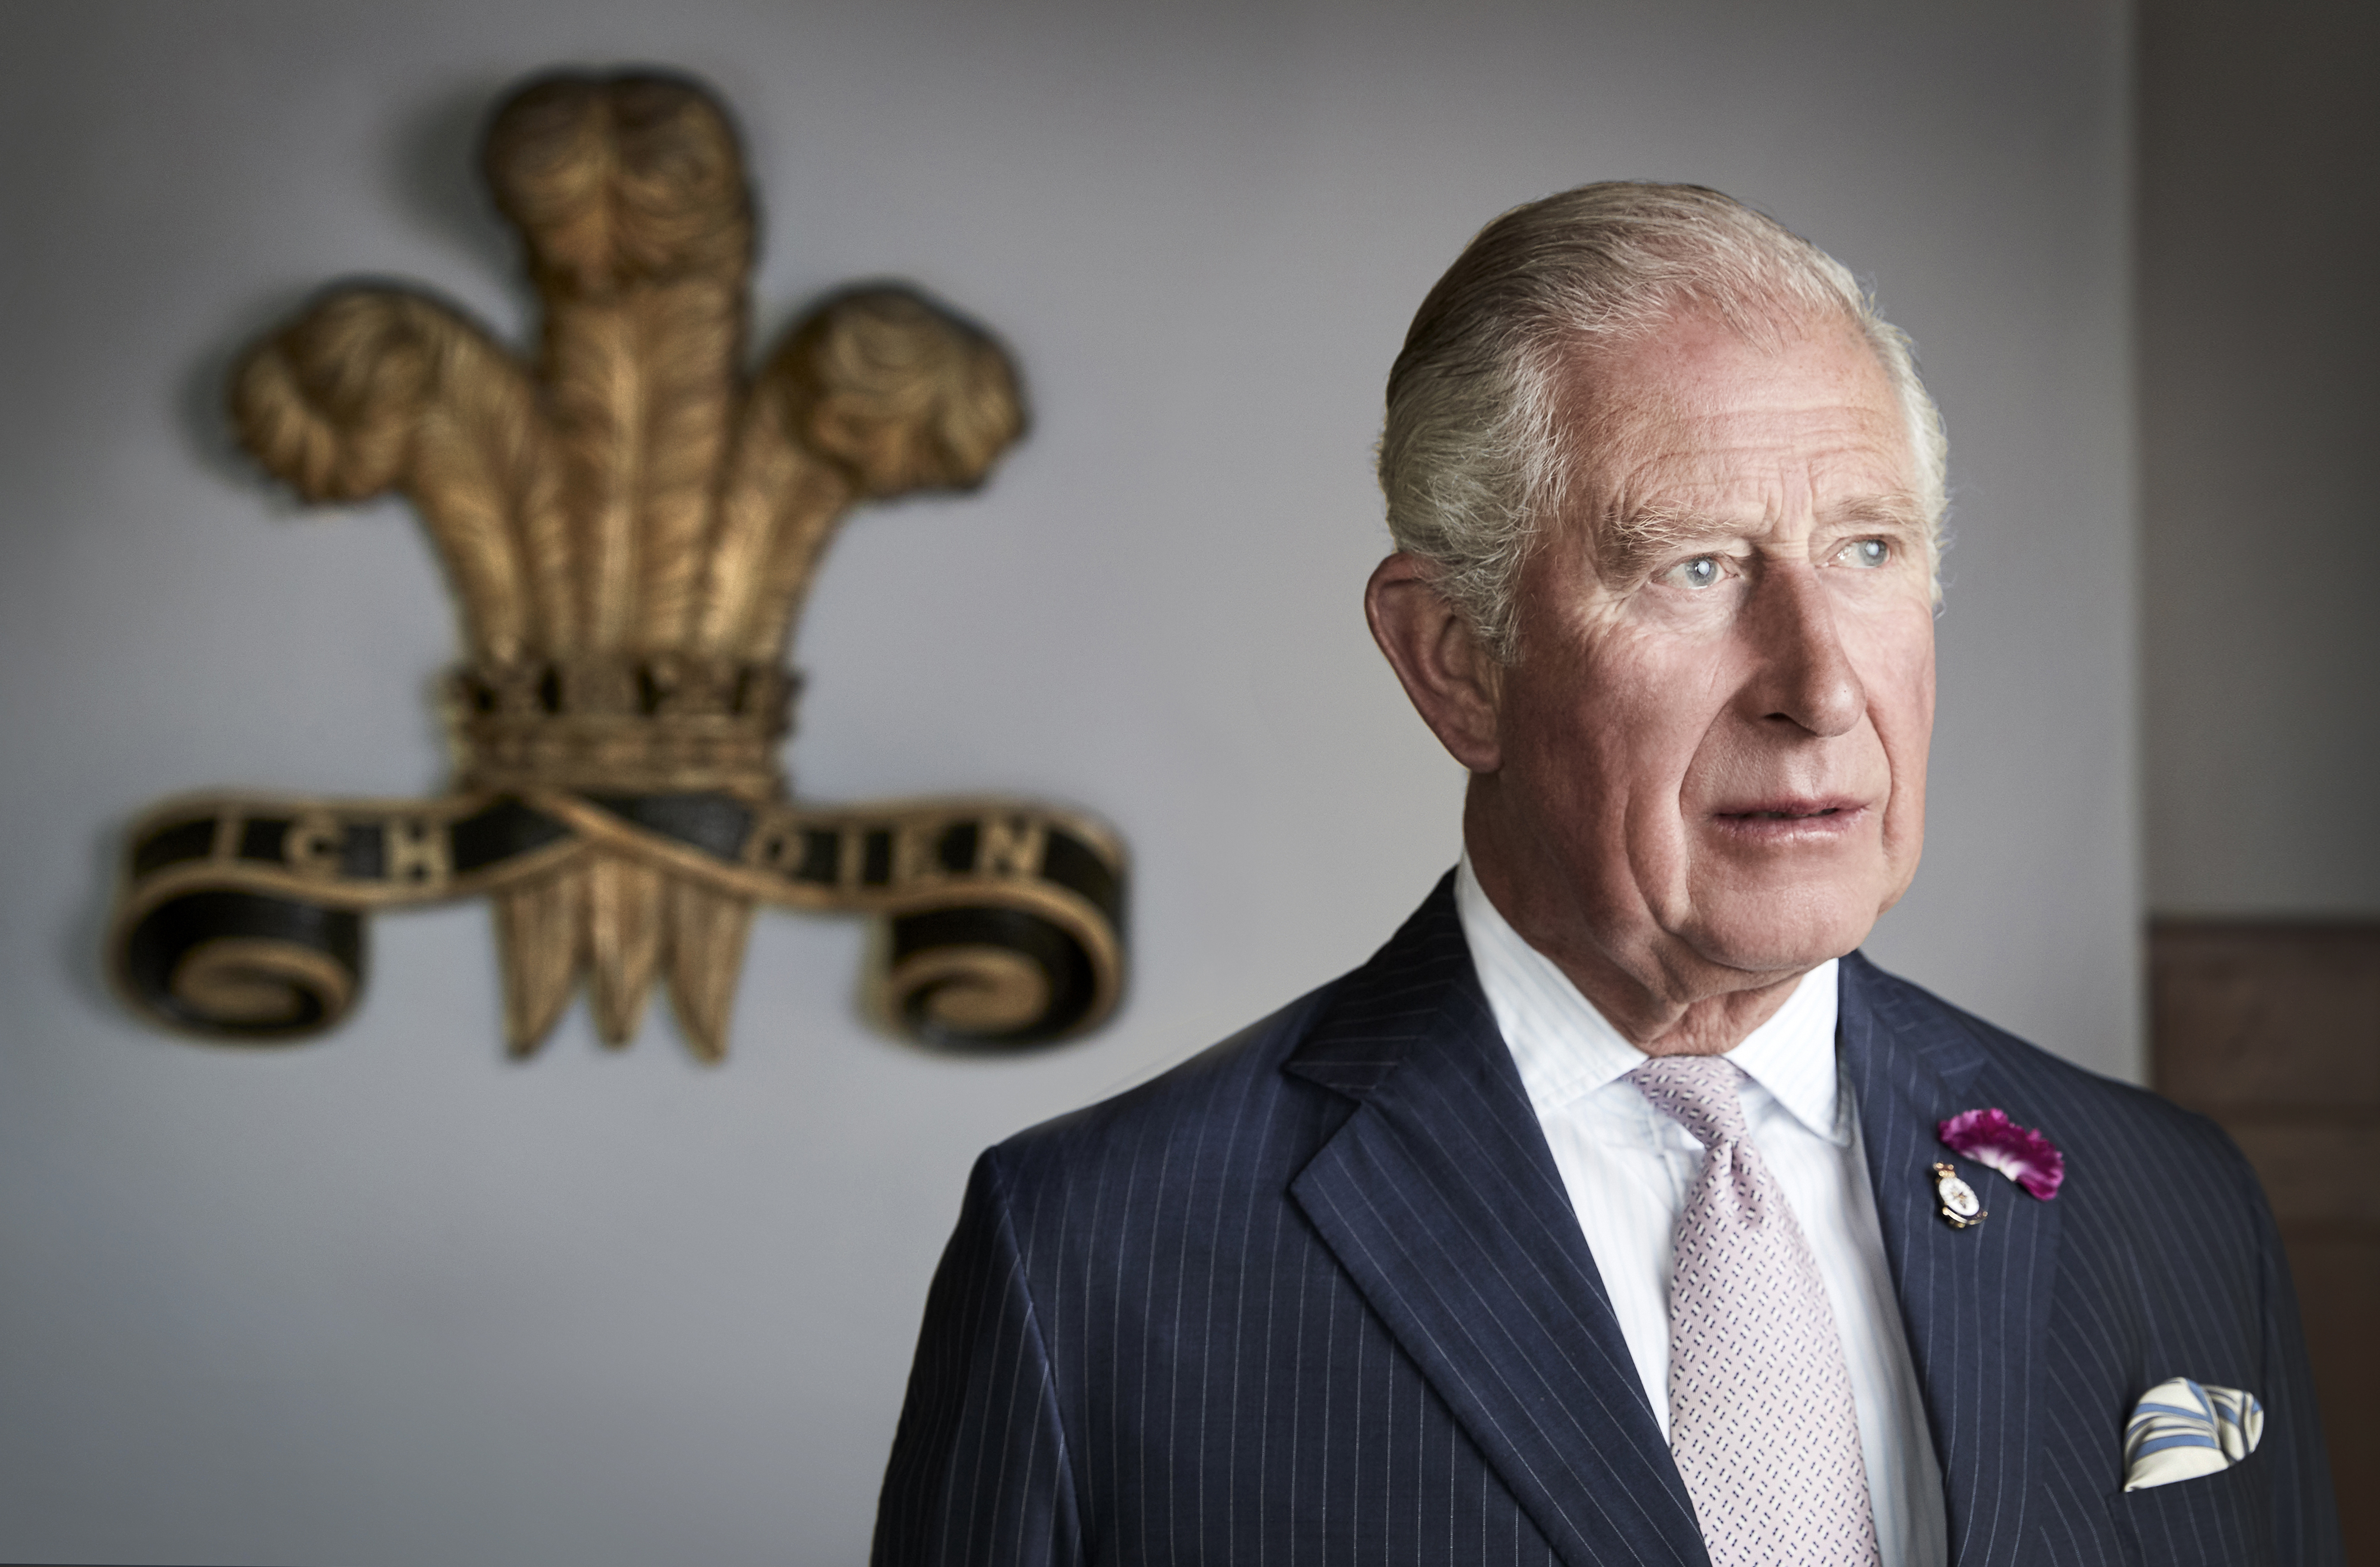 König Charles posiert für ein offizielles Porträt am 2. Juli 2019 in Myddfai, Wales, Vereinigtes Königreich | Quelle: Getty Images